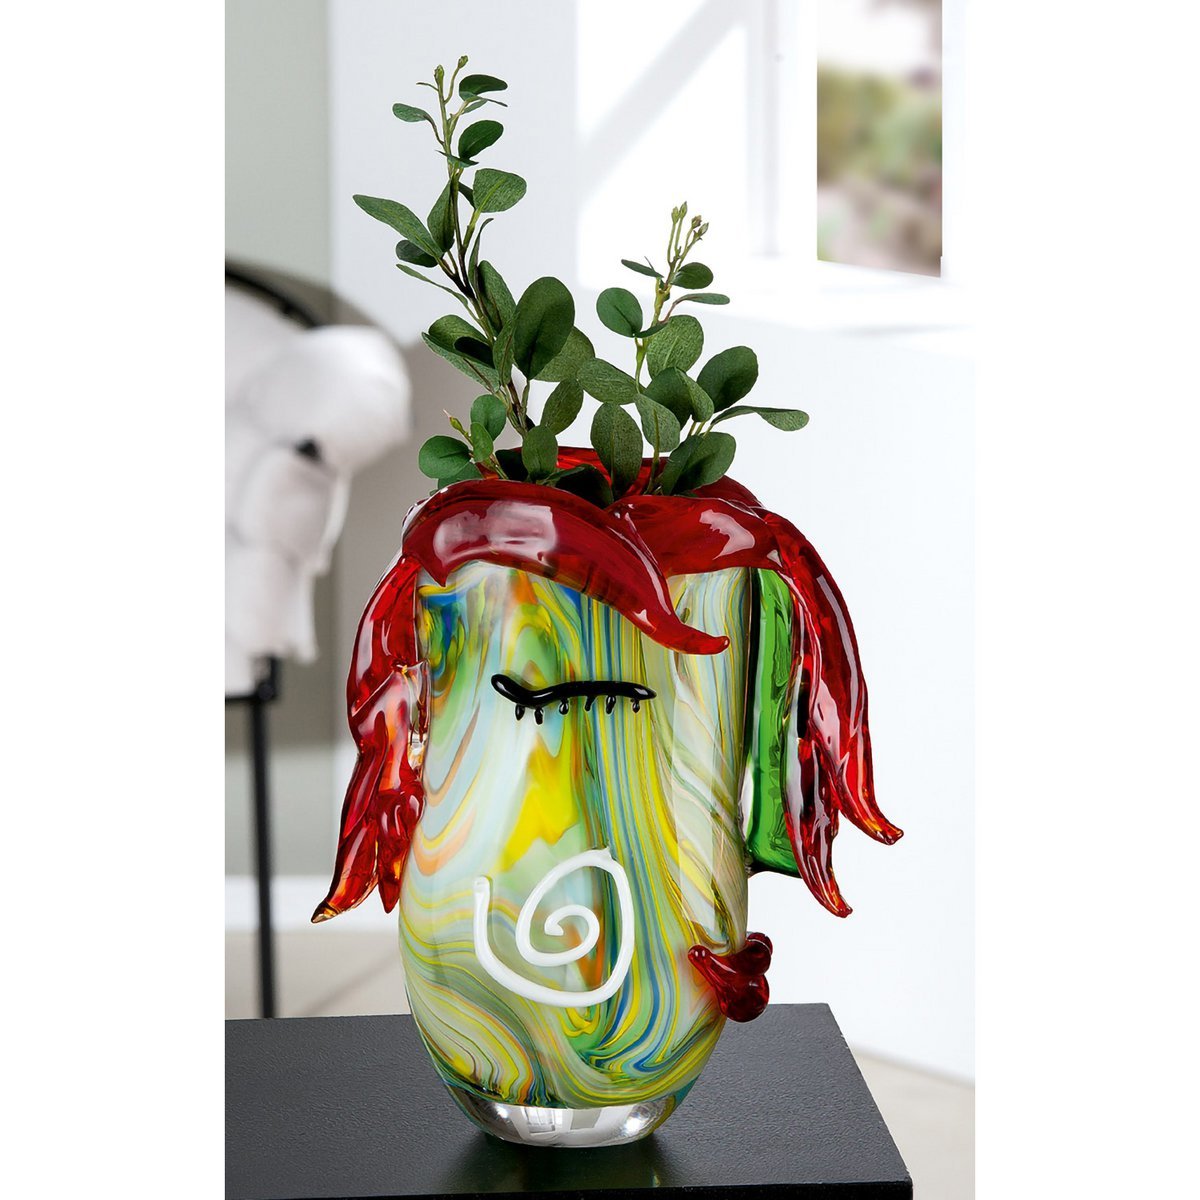 Glasart Vase "Curly"